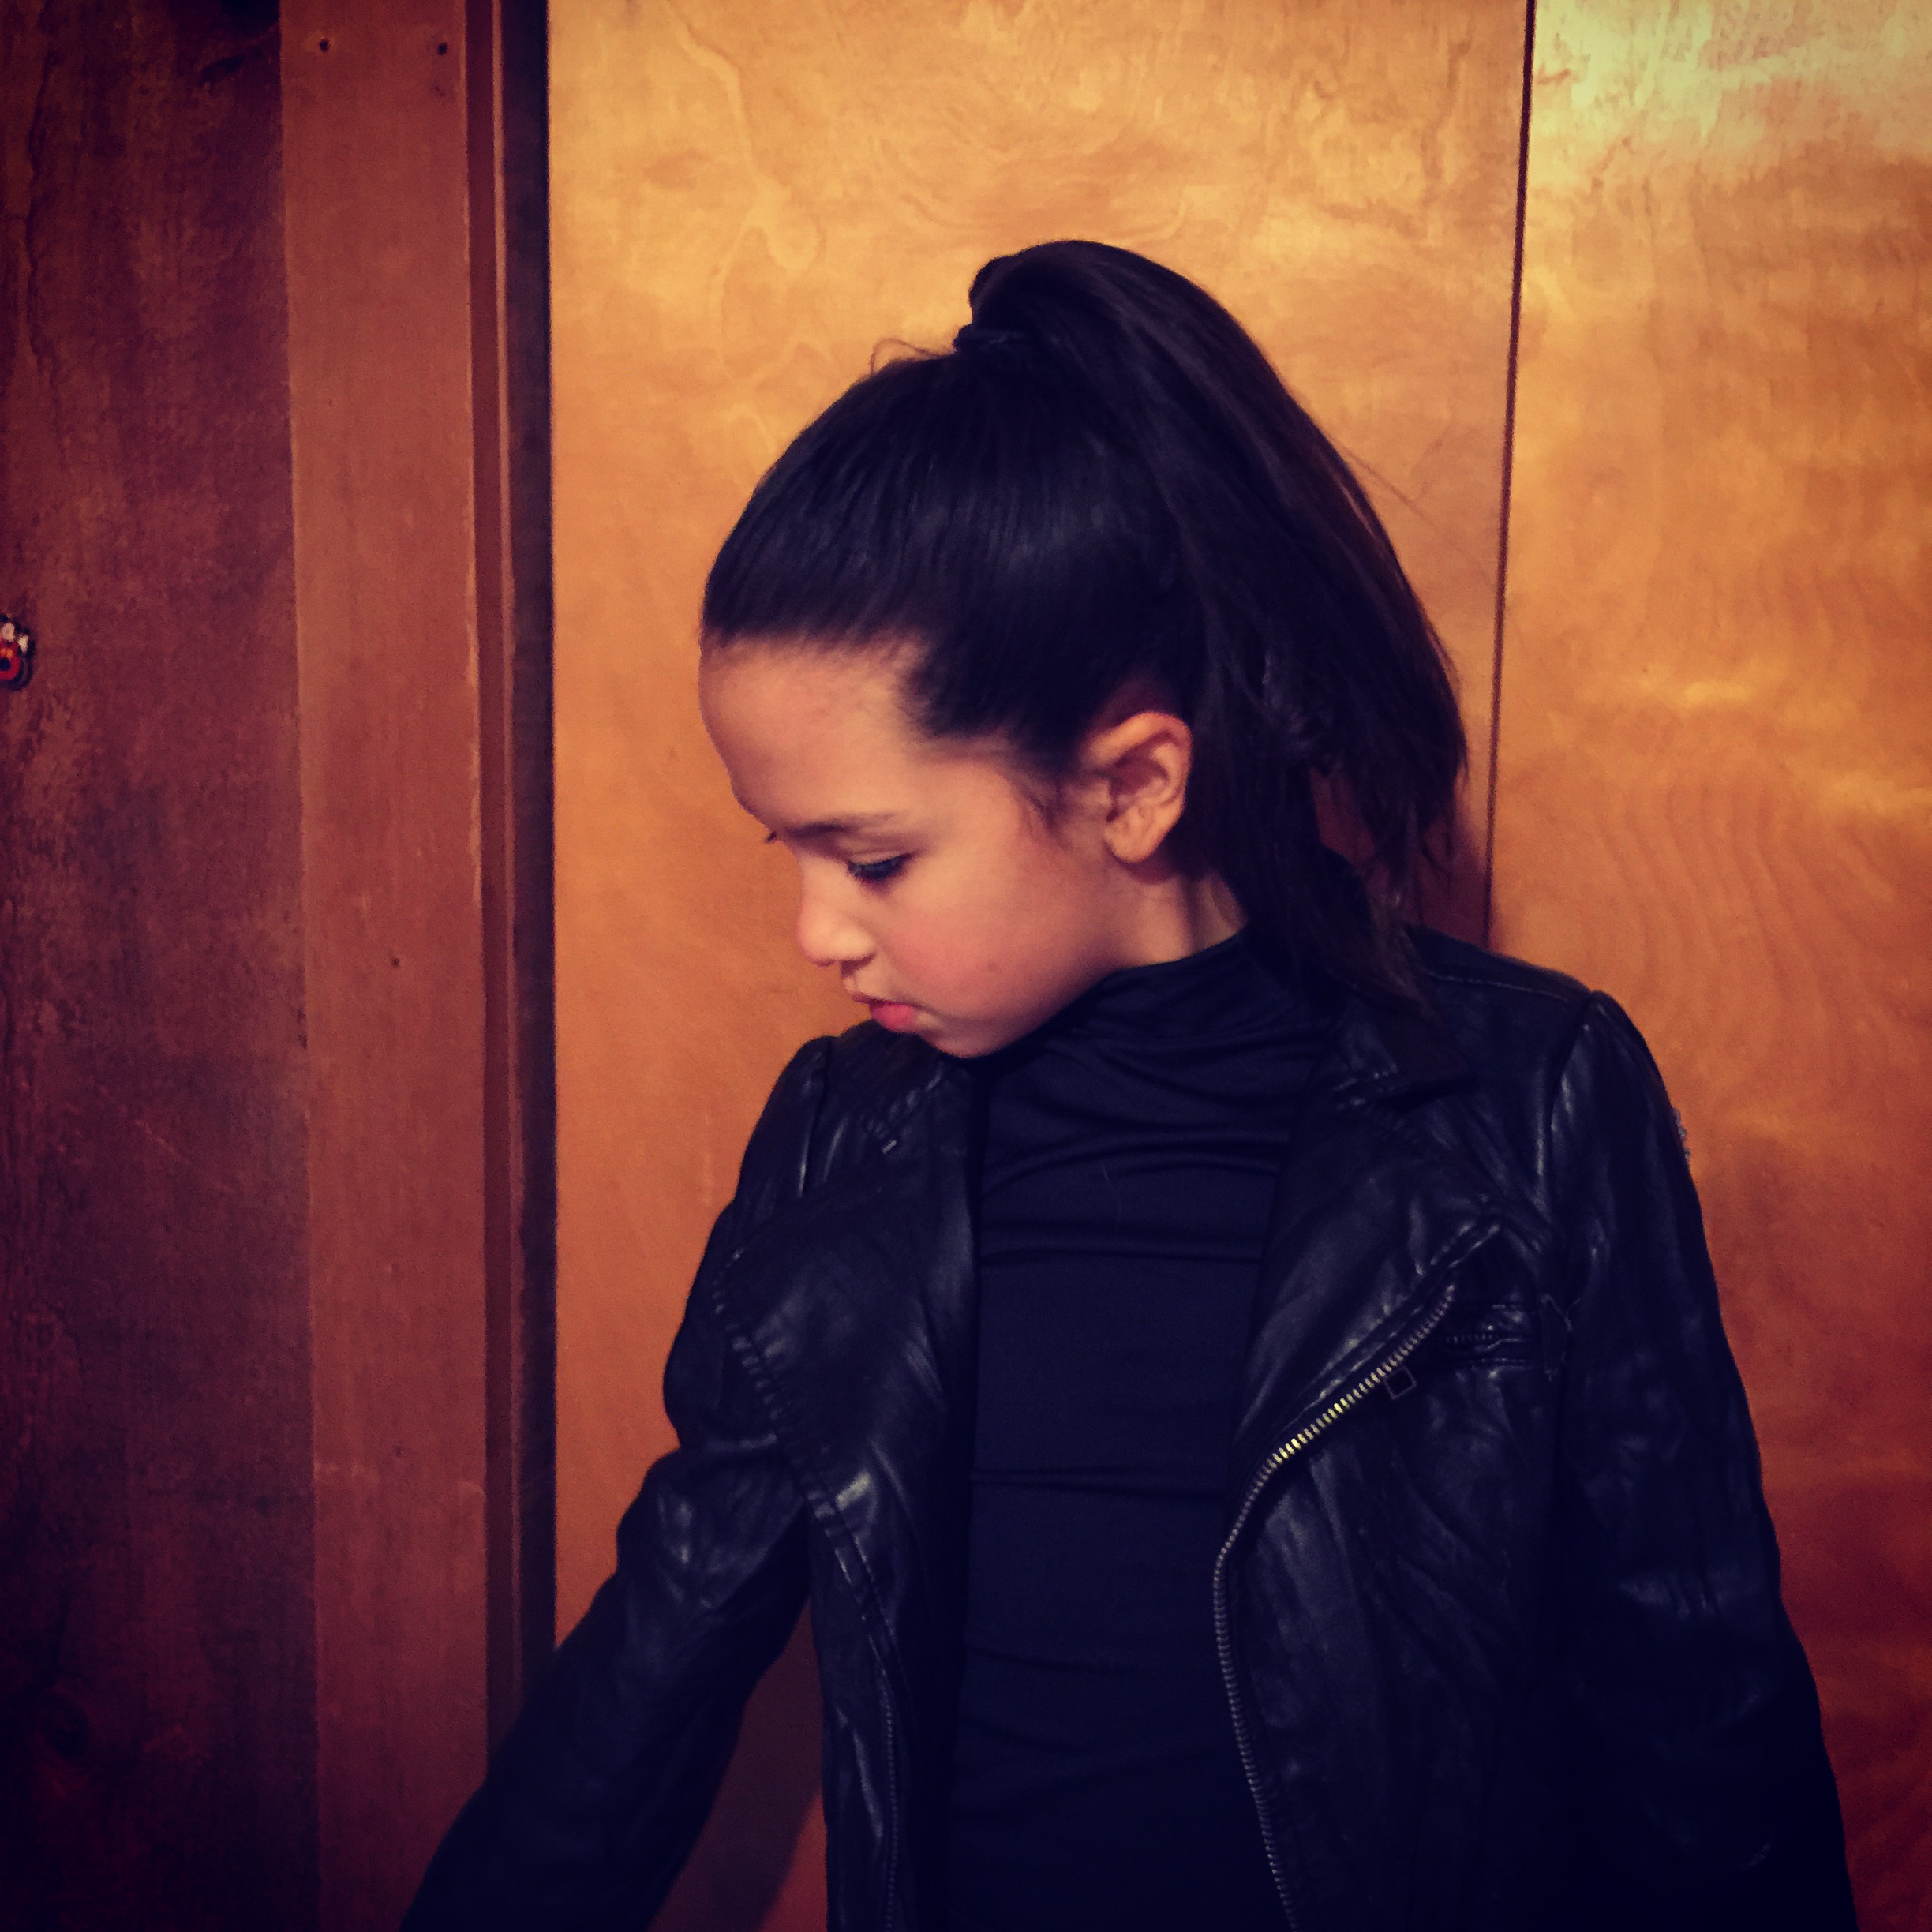 Sofia Plass as Secret Agent Sofia